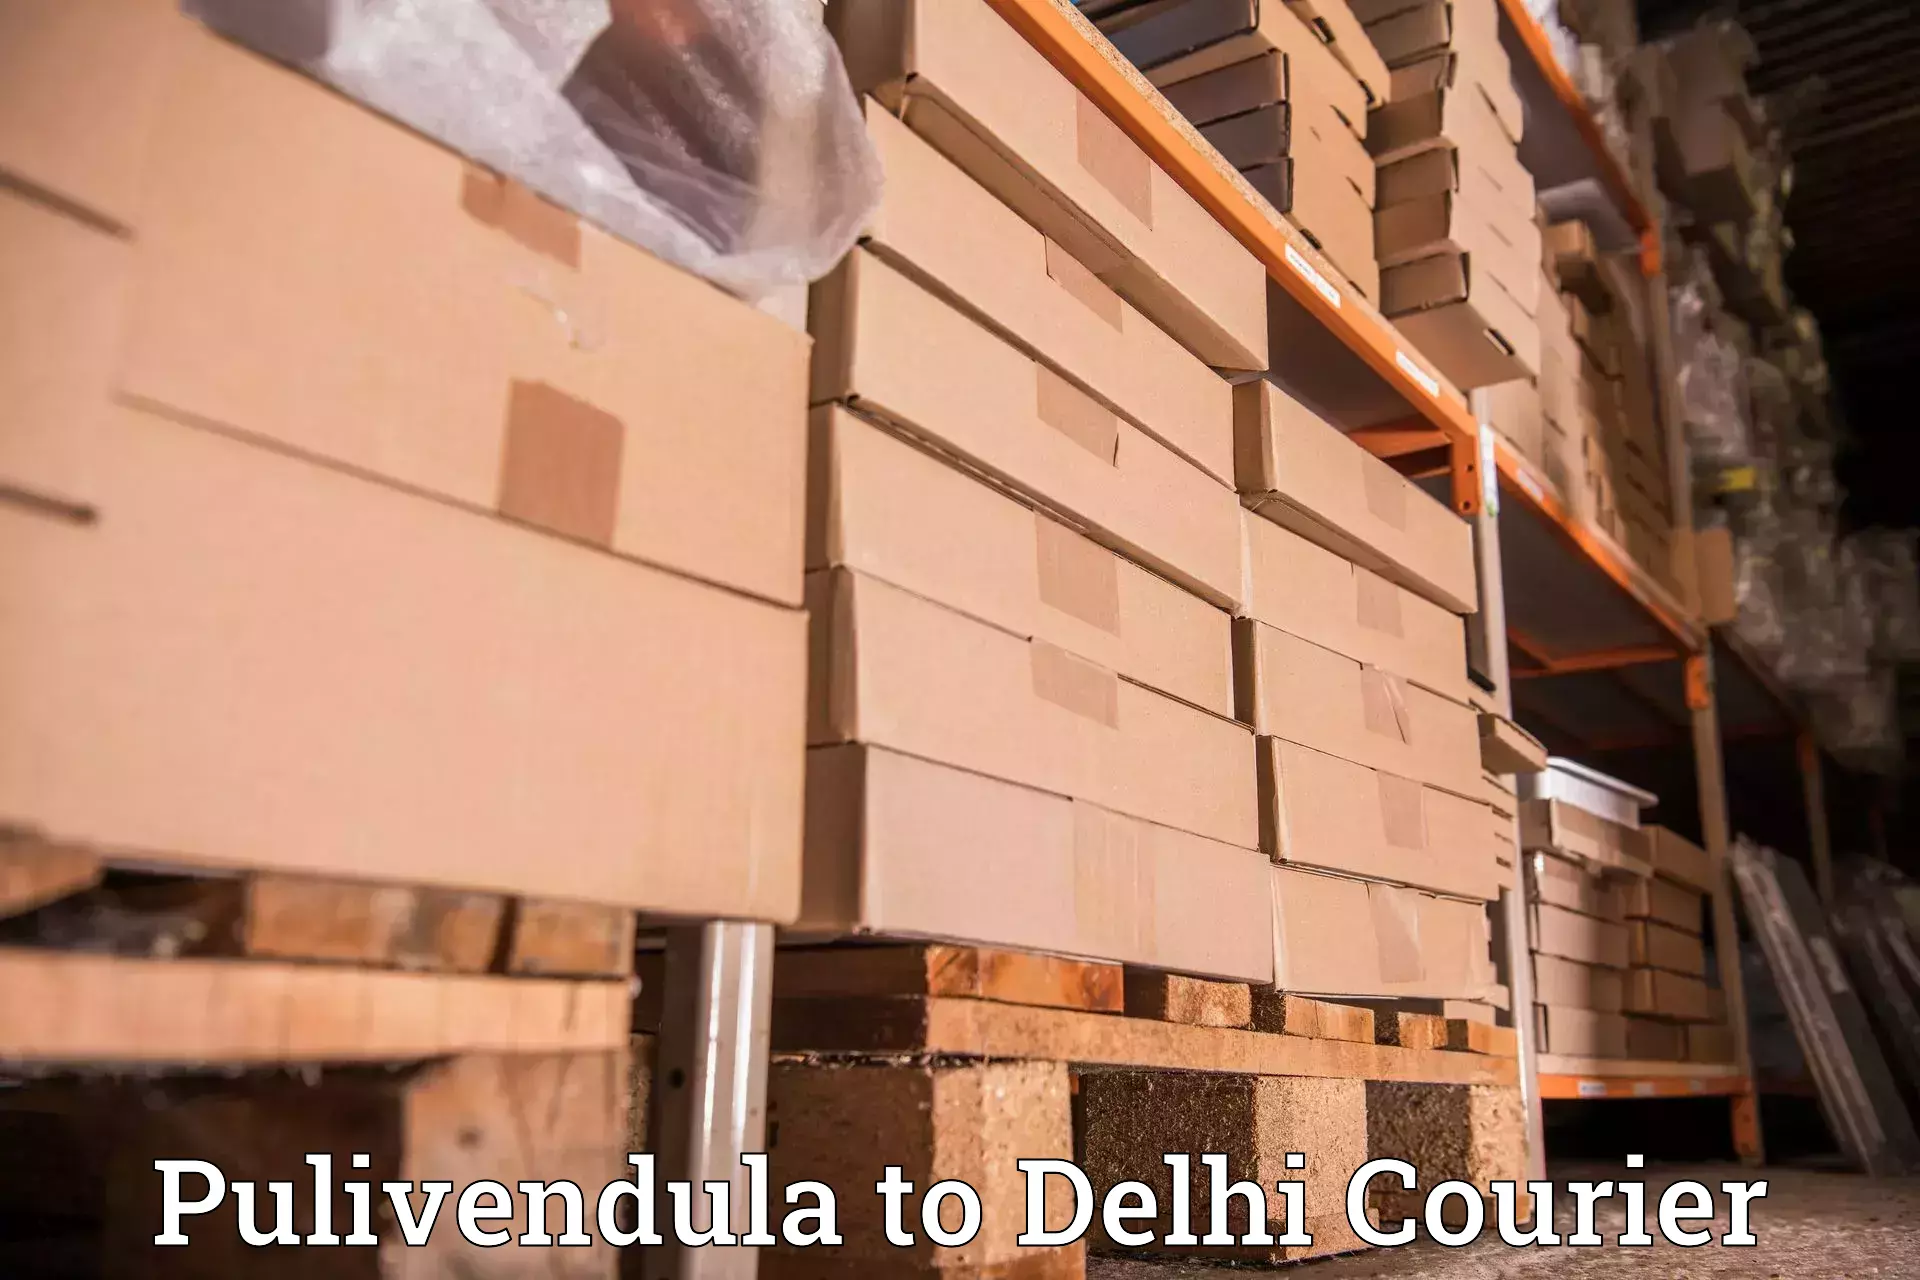 Global courier networks Pulivendula to Jamia Millia Islamia New Delhi